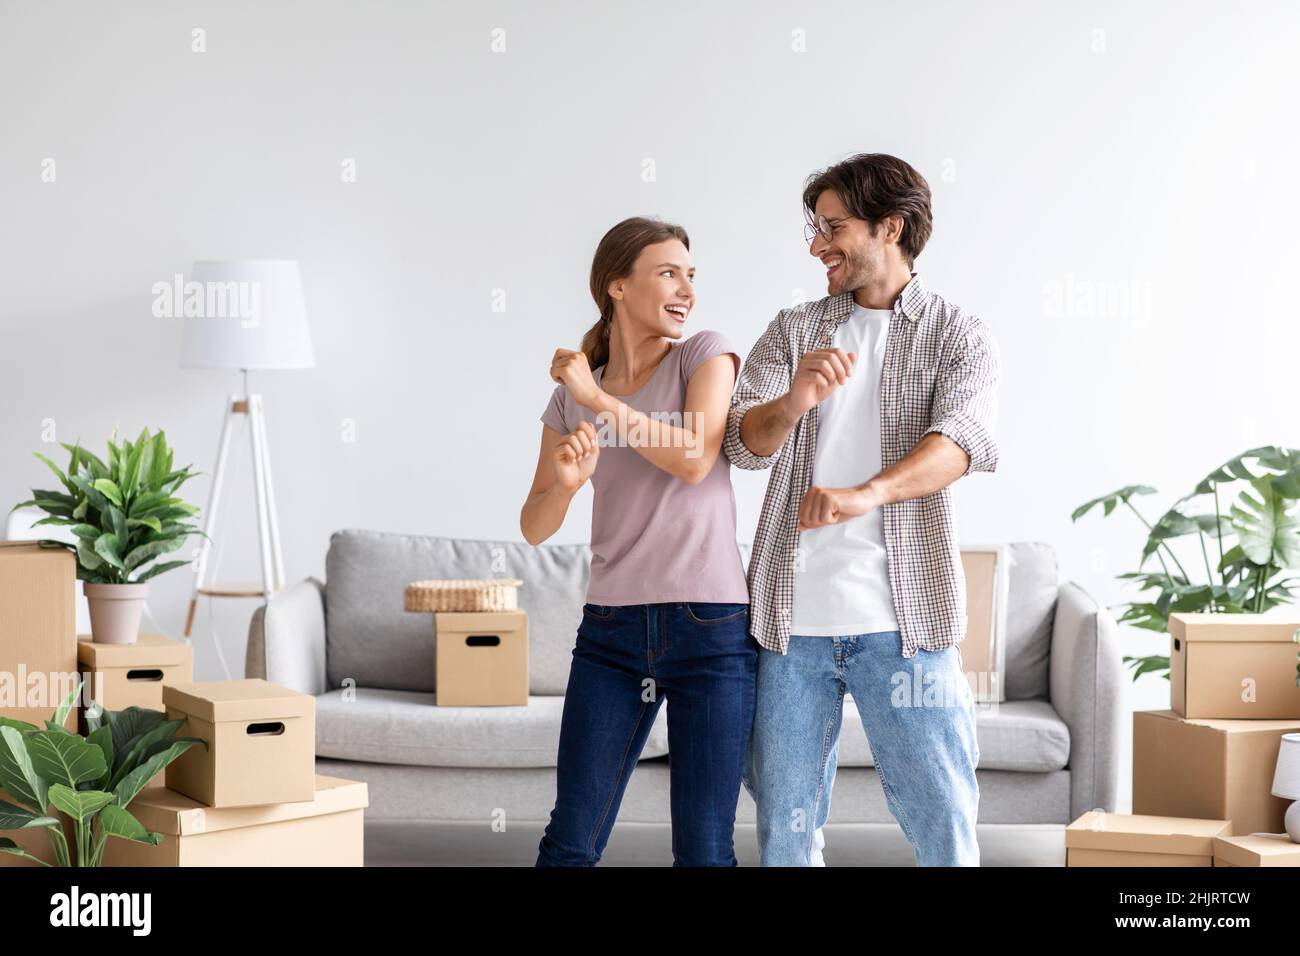 Glücklich zufrieden kaukasischen Mann und Frau feiern Kauf einer neuen Wohnung, tanzen im Zimmer Interieur Stockfoto